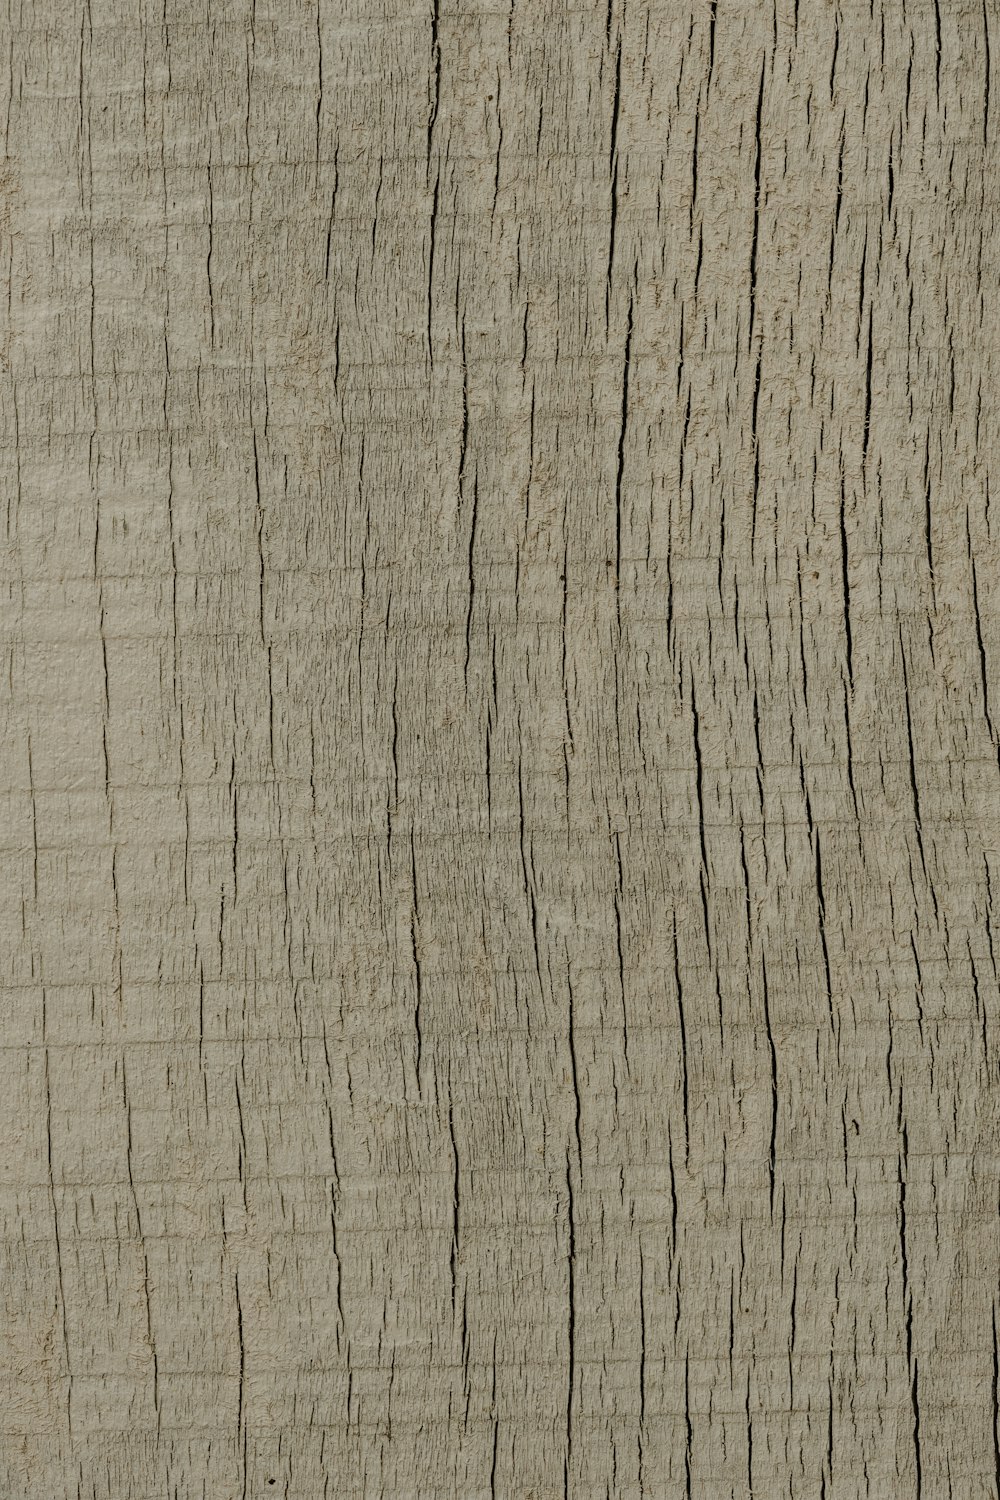 um close up de um padrão de grão de madeira